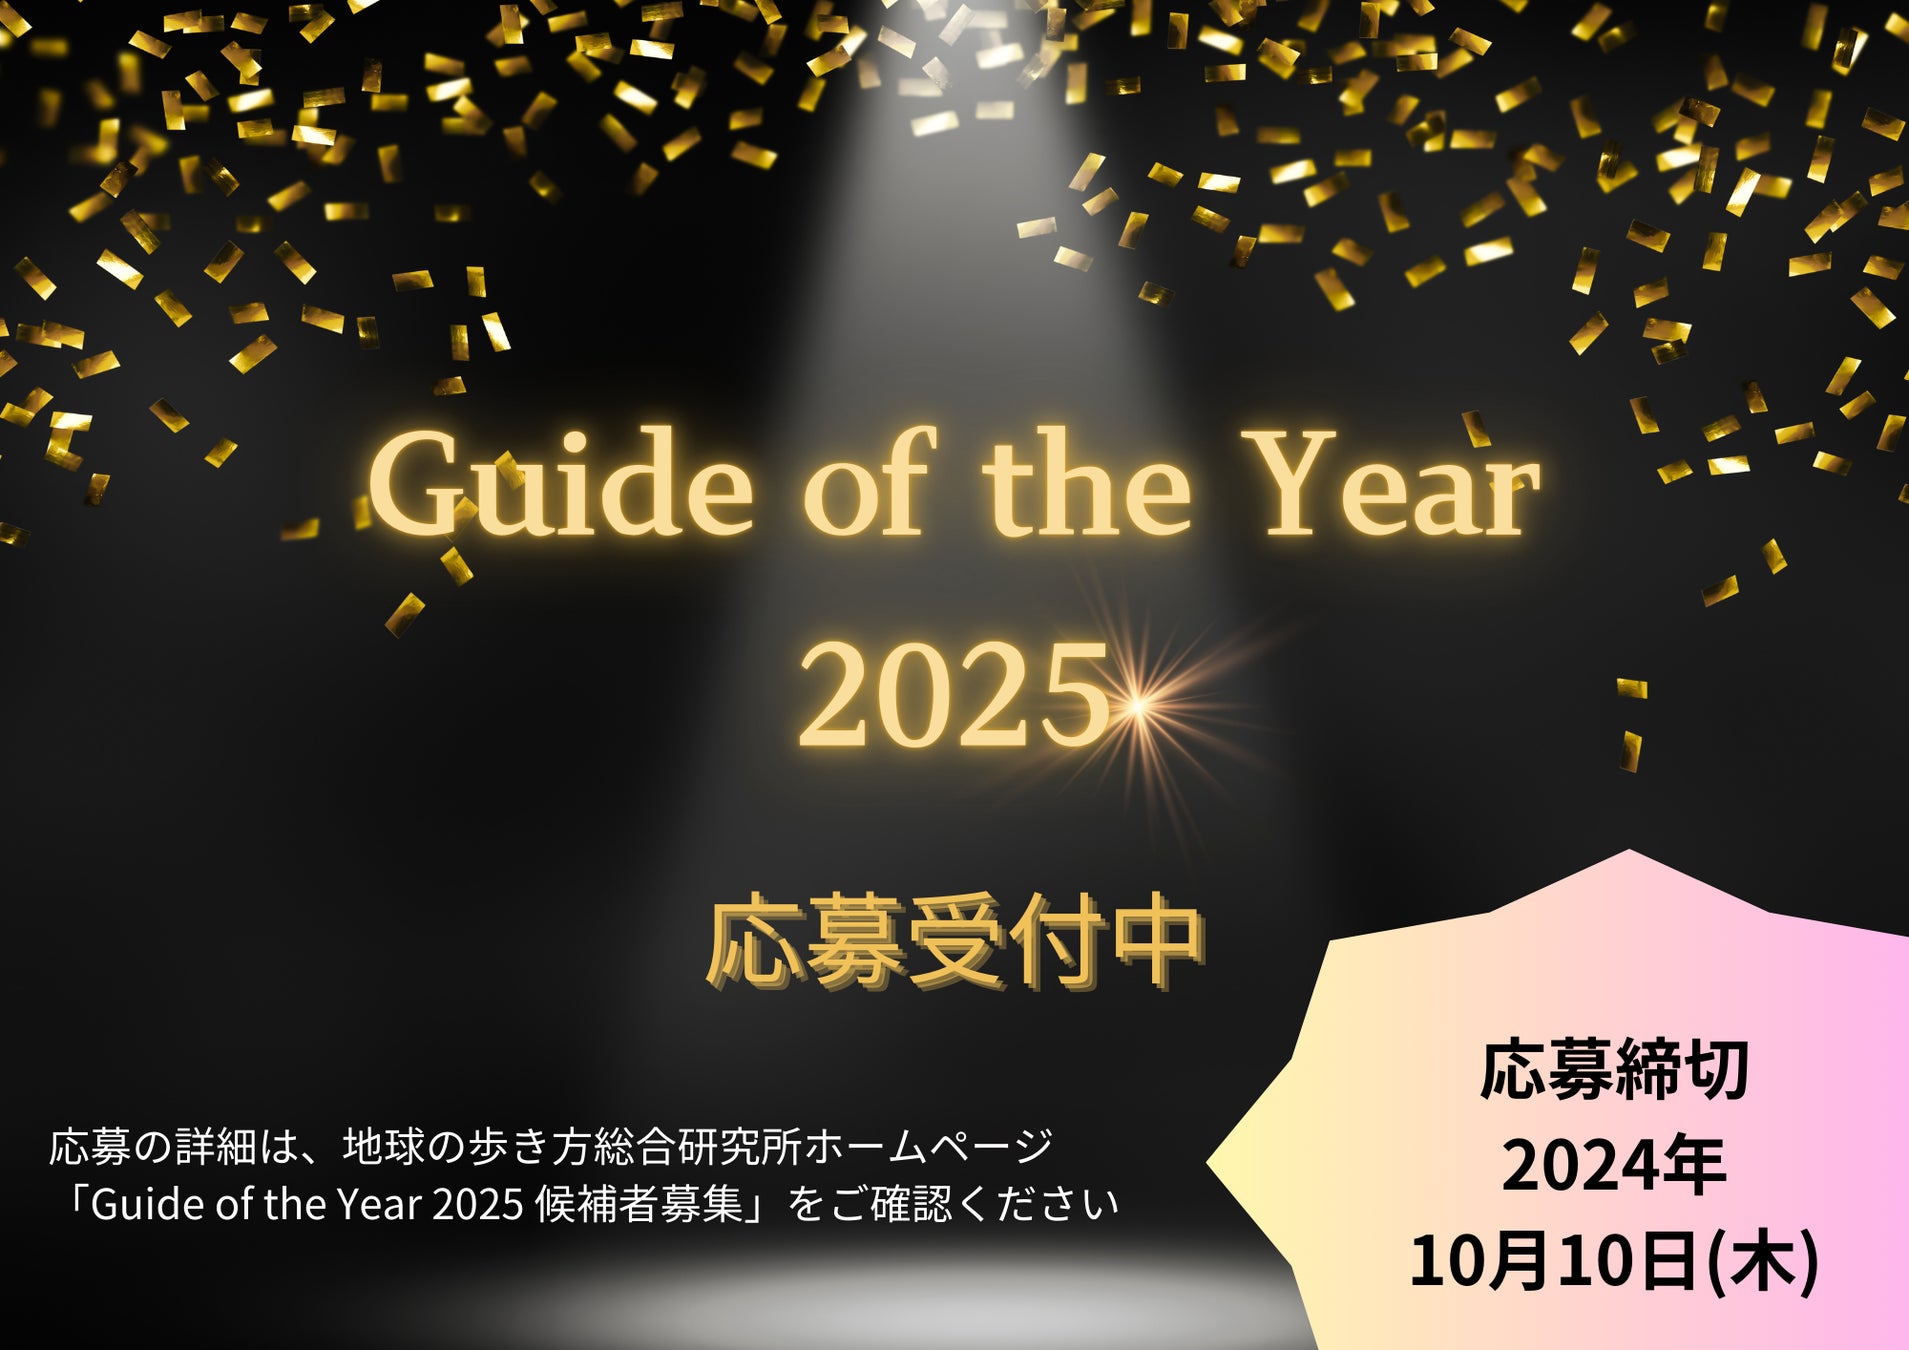 【地球の歩き方総合研究所】旅の価値を上げるガイドを表彰する「Guide of the Year 2025」の募集を開始！